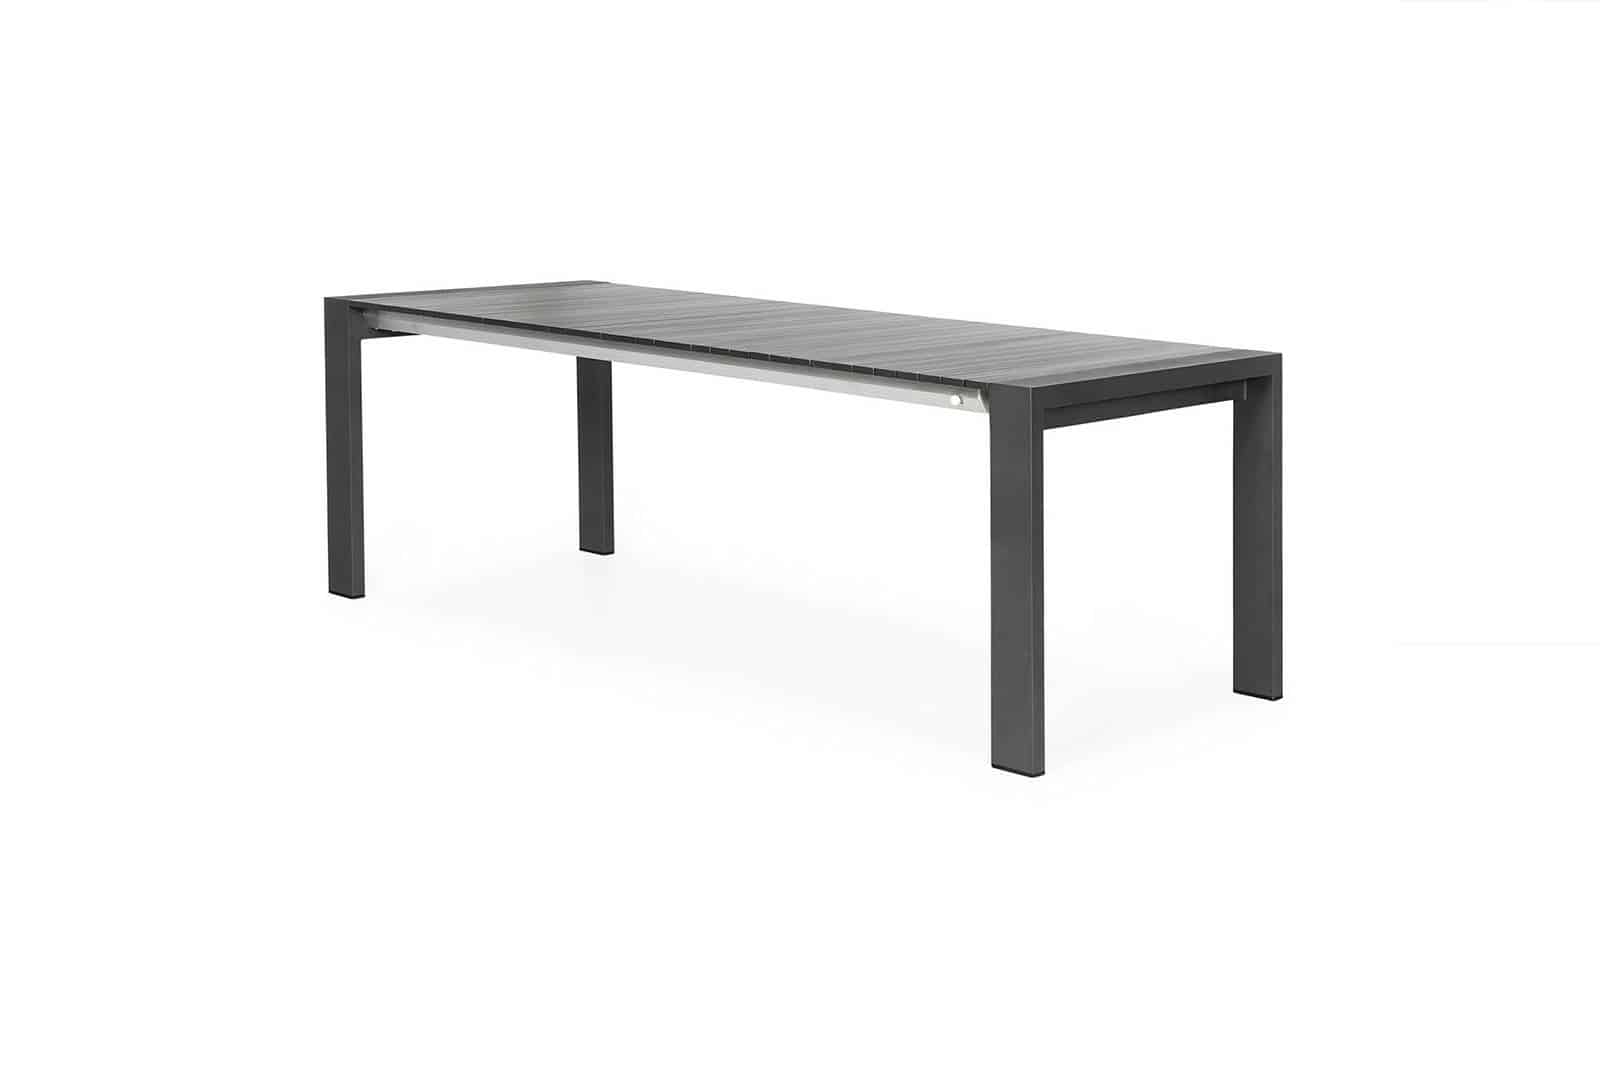 stol-ogrodowy-rozkladany-aluminiowy-rialto-163-cm-antracyt